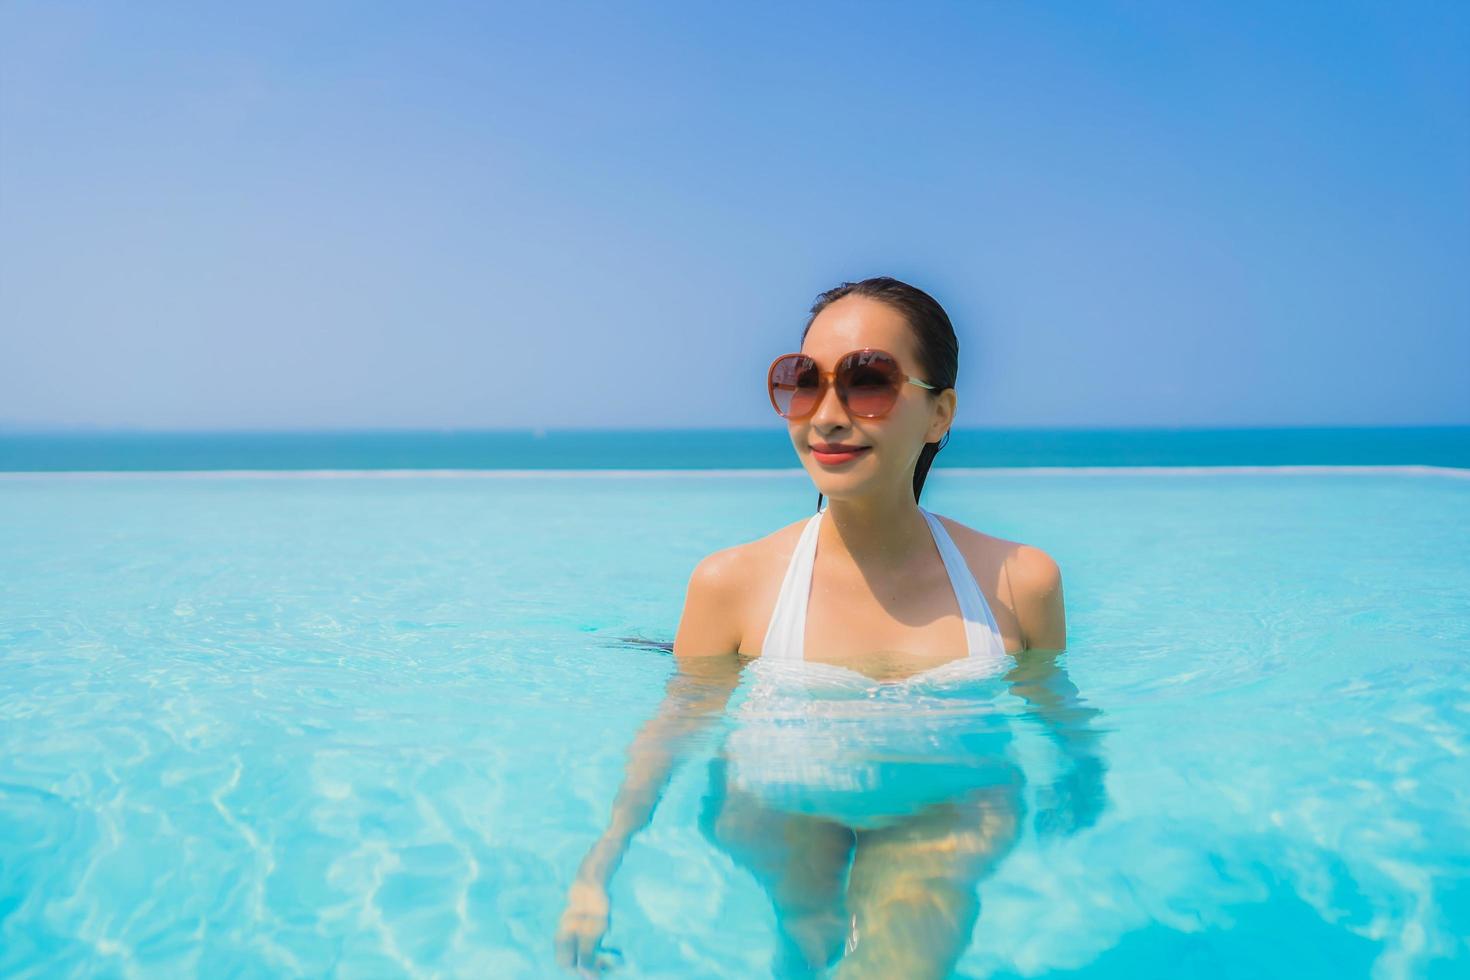 portret mooie jonge aziatische vrouw gelukkige glimlach ontspannen in het zwembad voor reisvakantie foto